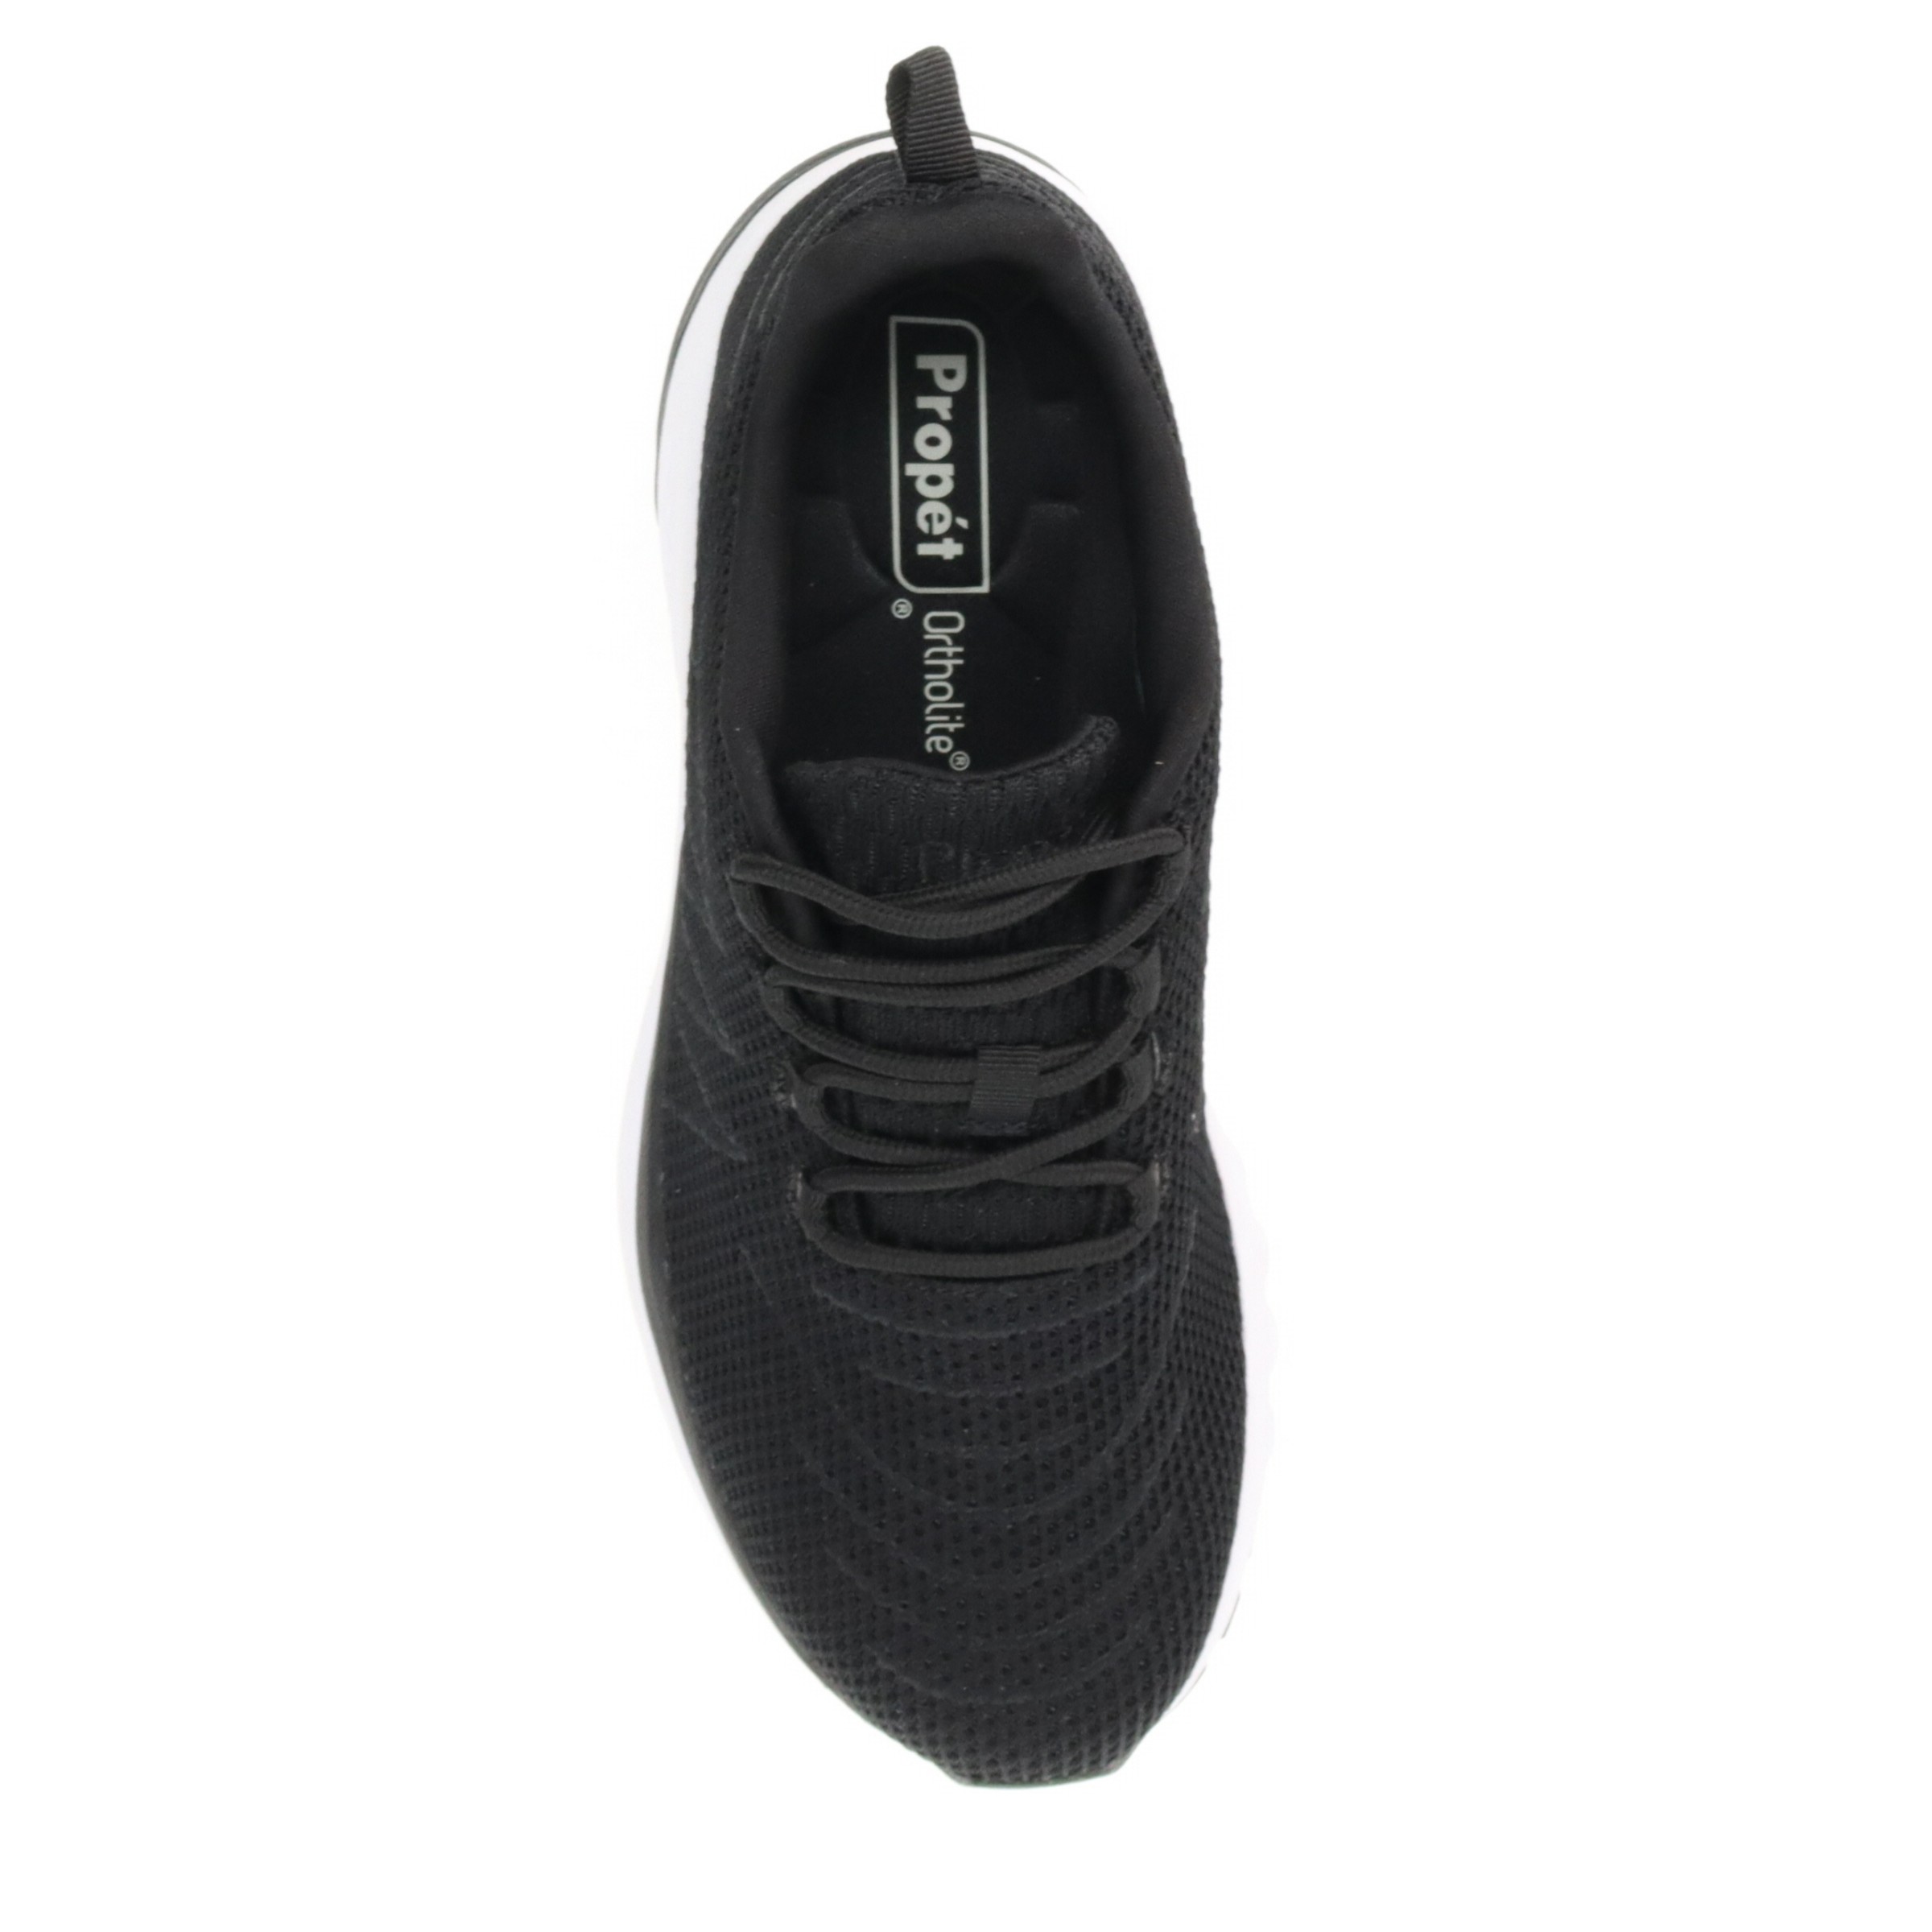 Propet Tour Knit Men's Sneakers, Size: 8.5, Black